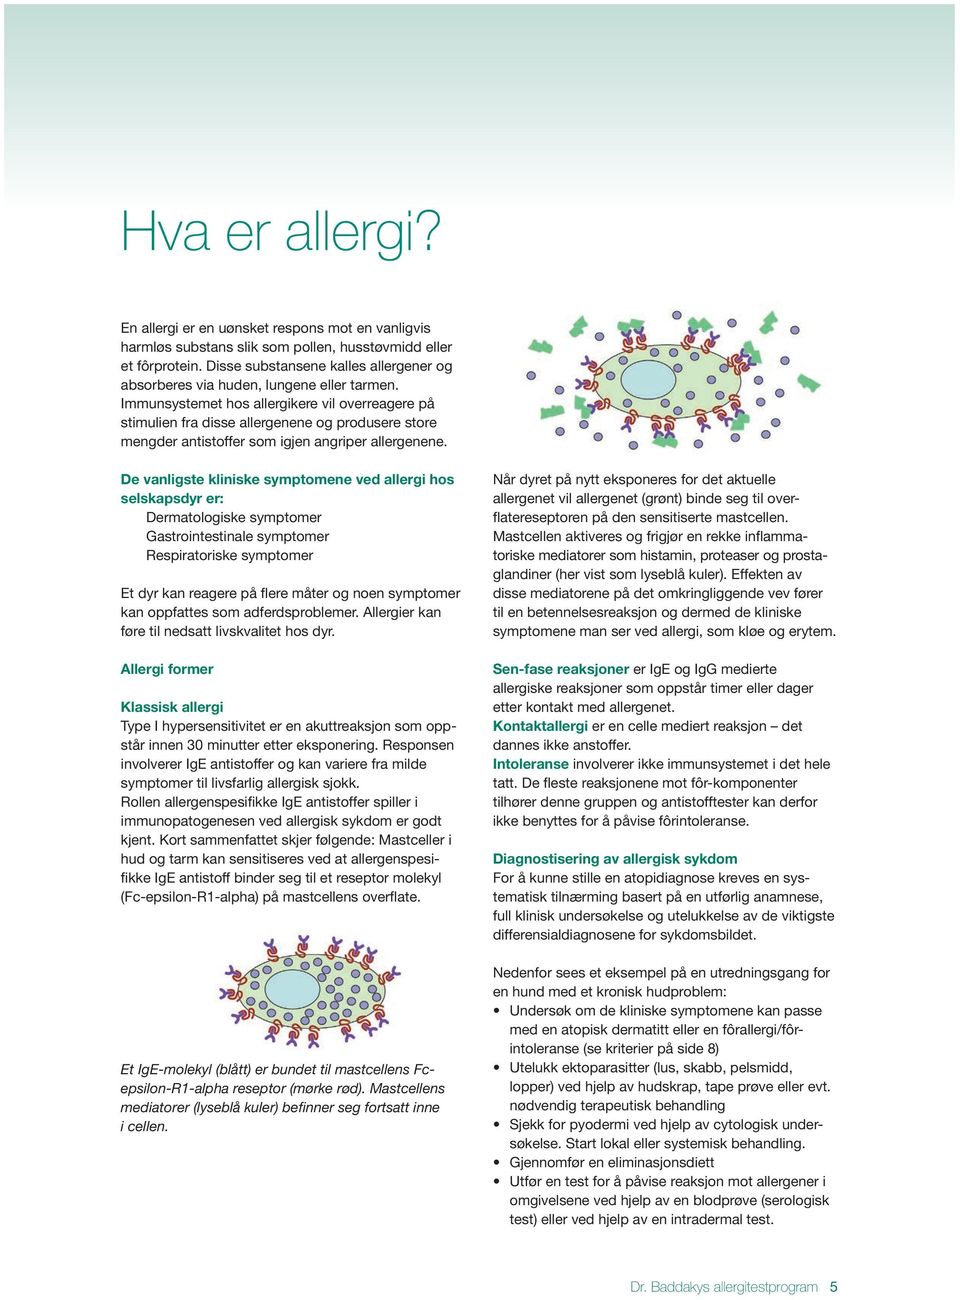 Immunsystemet hos allergikere vil overreagere på stimulien fra disse allergenene og produsere store mengder antistoffer som igjen angriper allergenene.